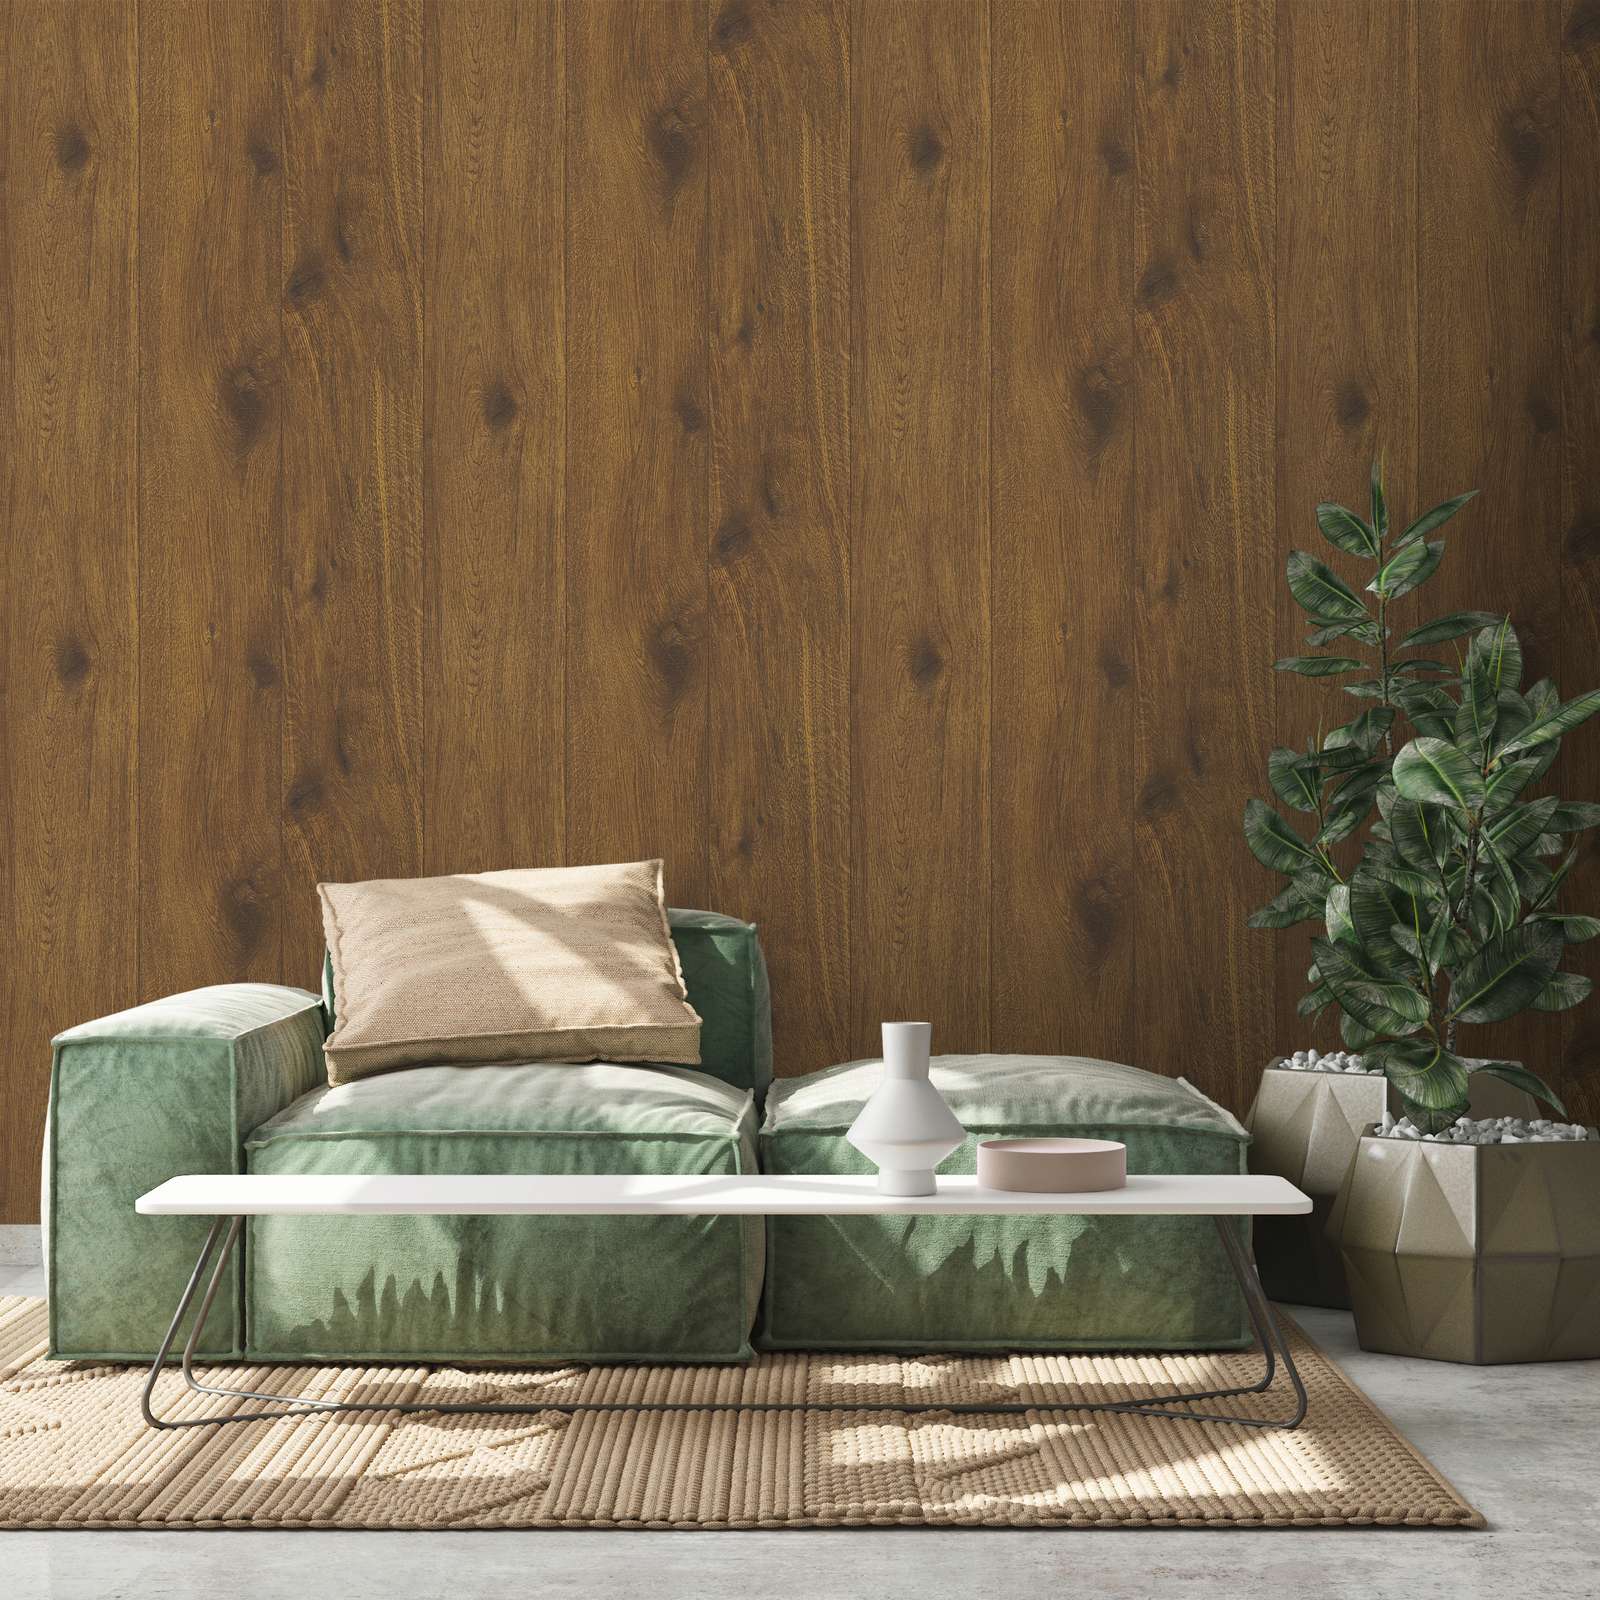             Papel pintado efecto madera con grano de madera natural - marrón
        